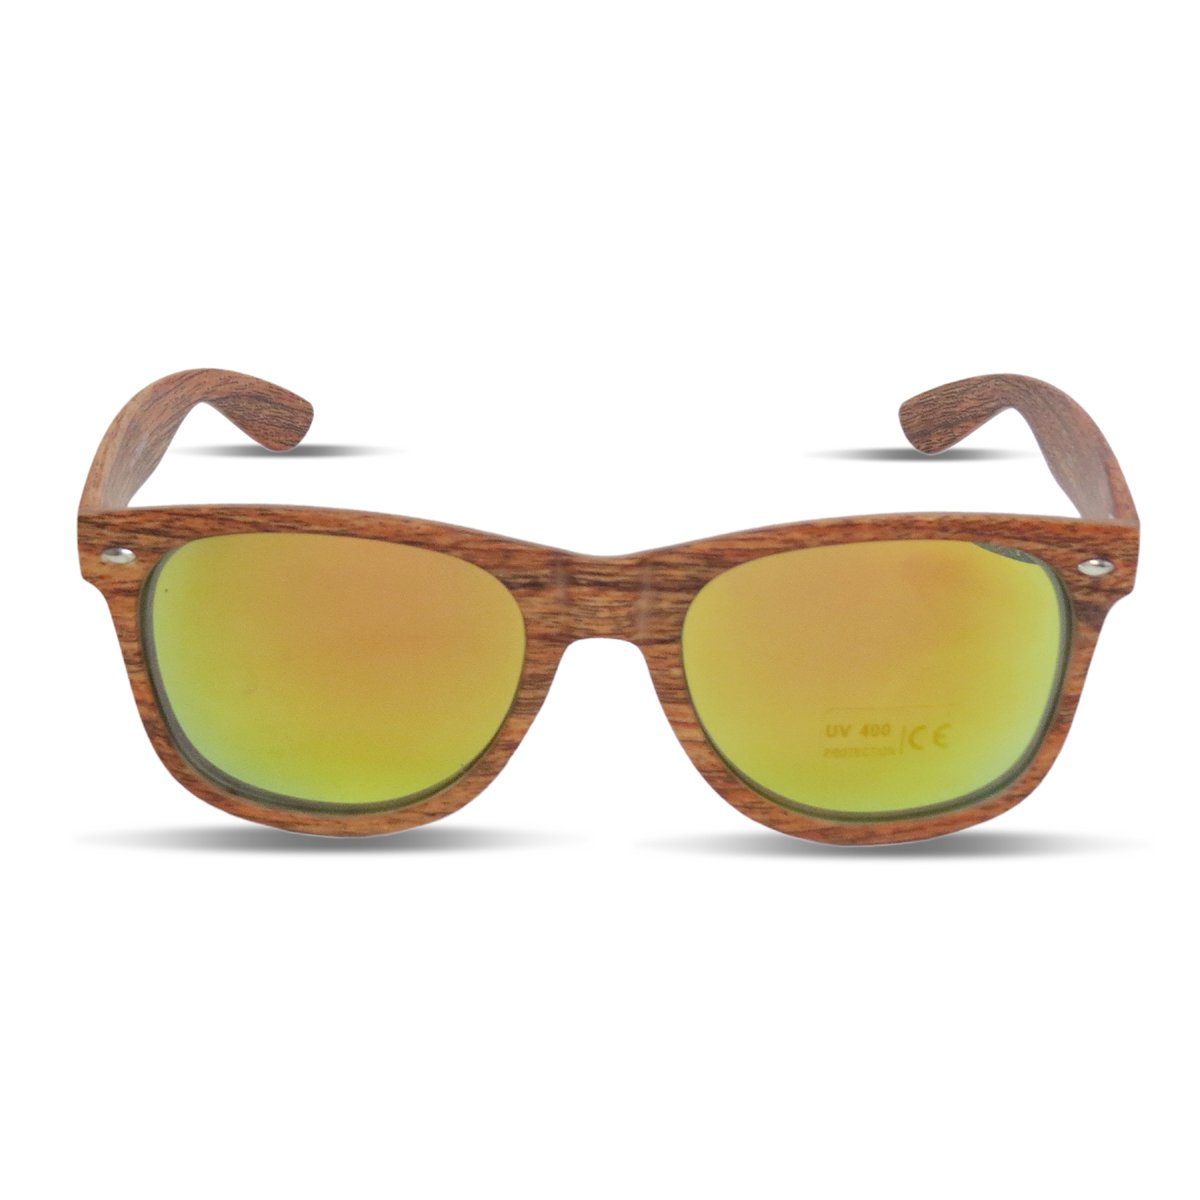 Sonia Originelli Sonnenbrille Sonnenbrille "Wooden Classic" Verspiegelt Brille Sommer Onesize